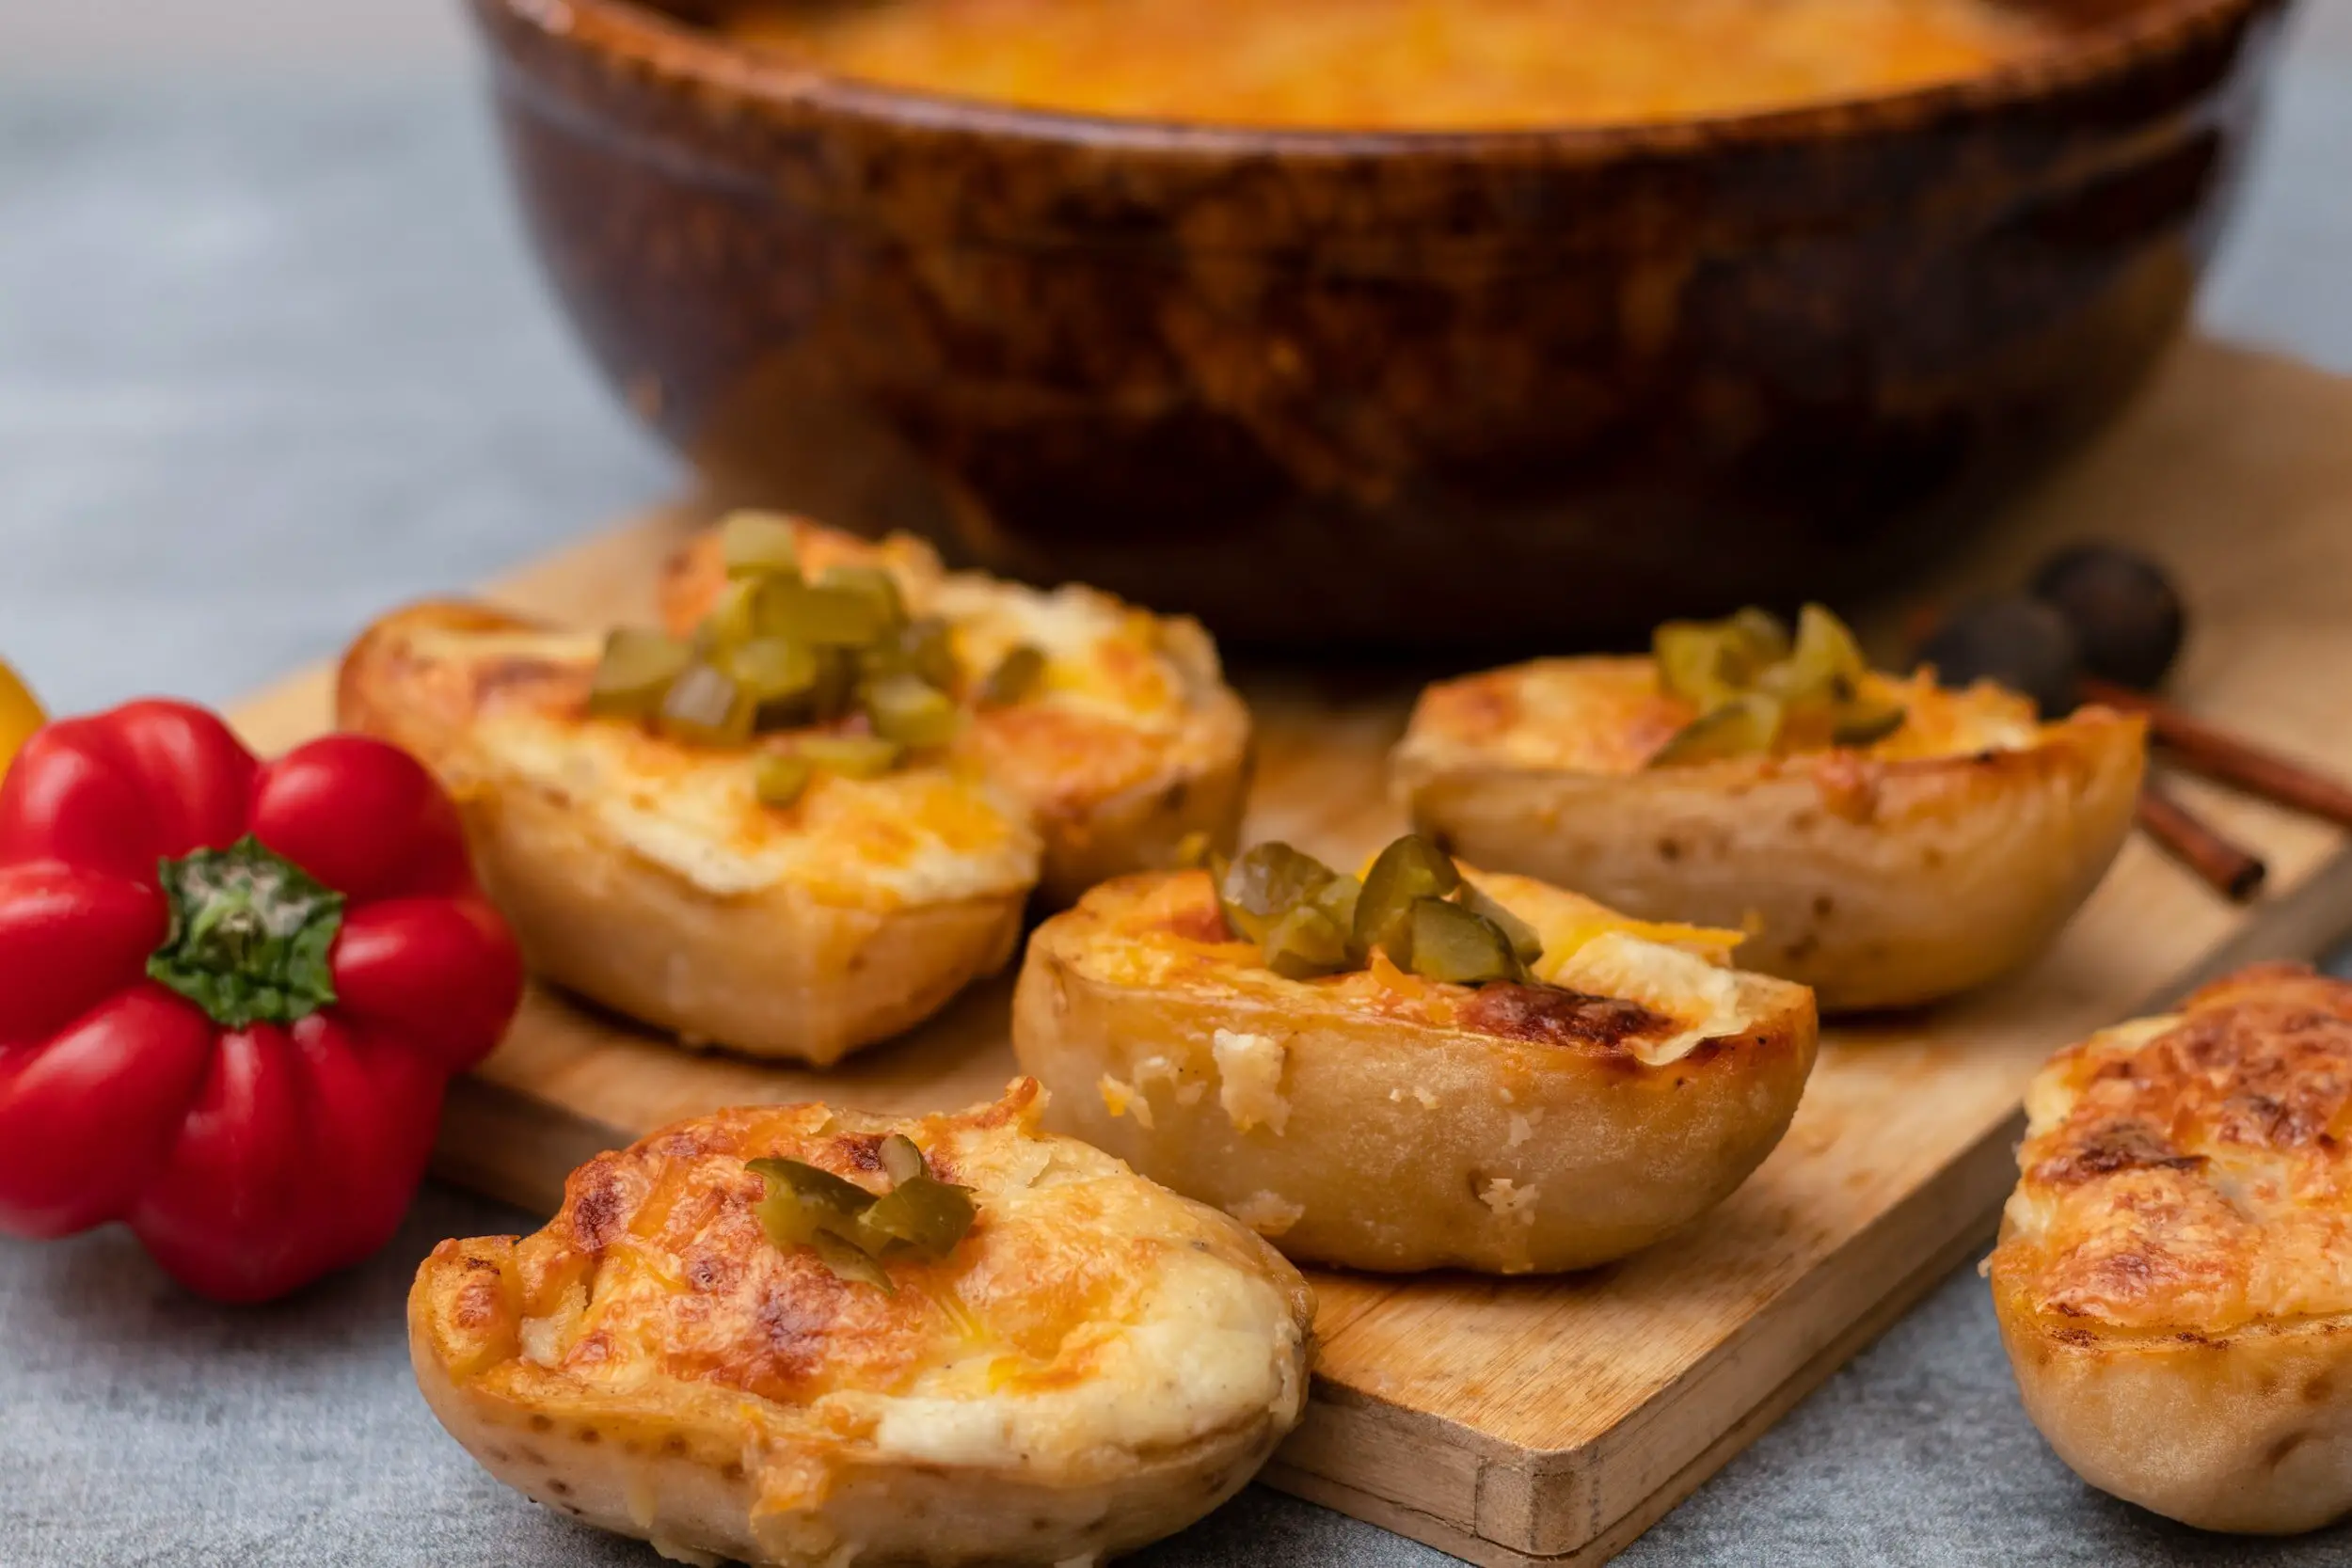 merlot vegetarian food pairing - baked potatos